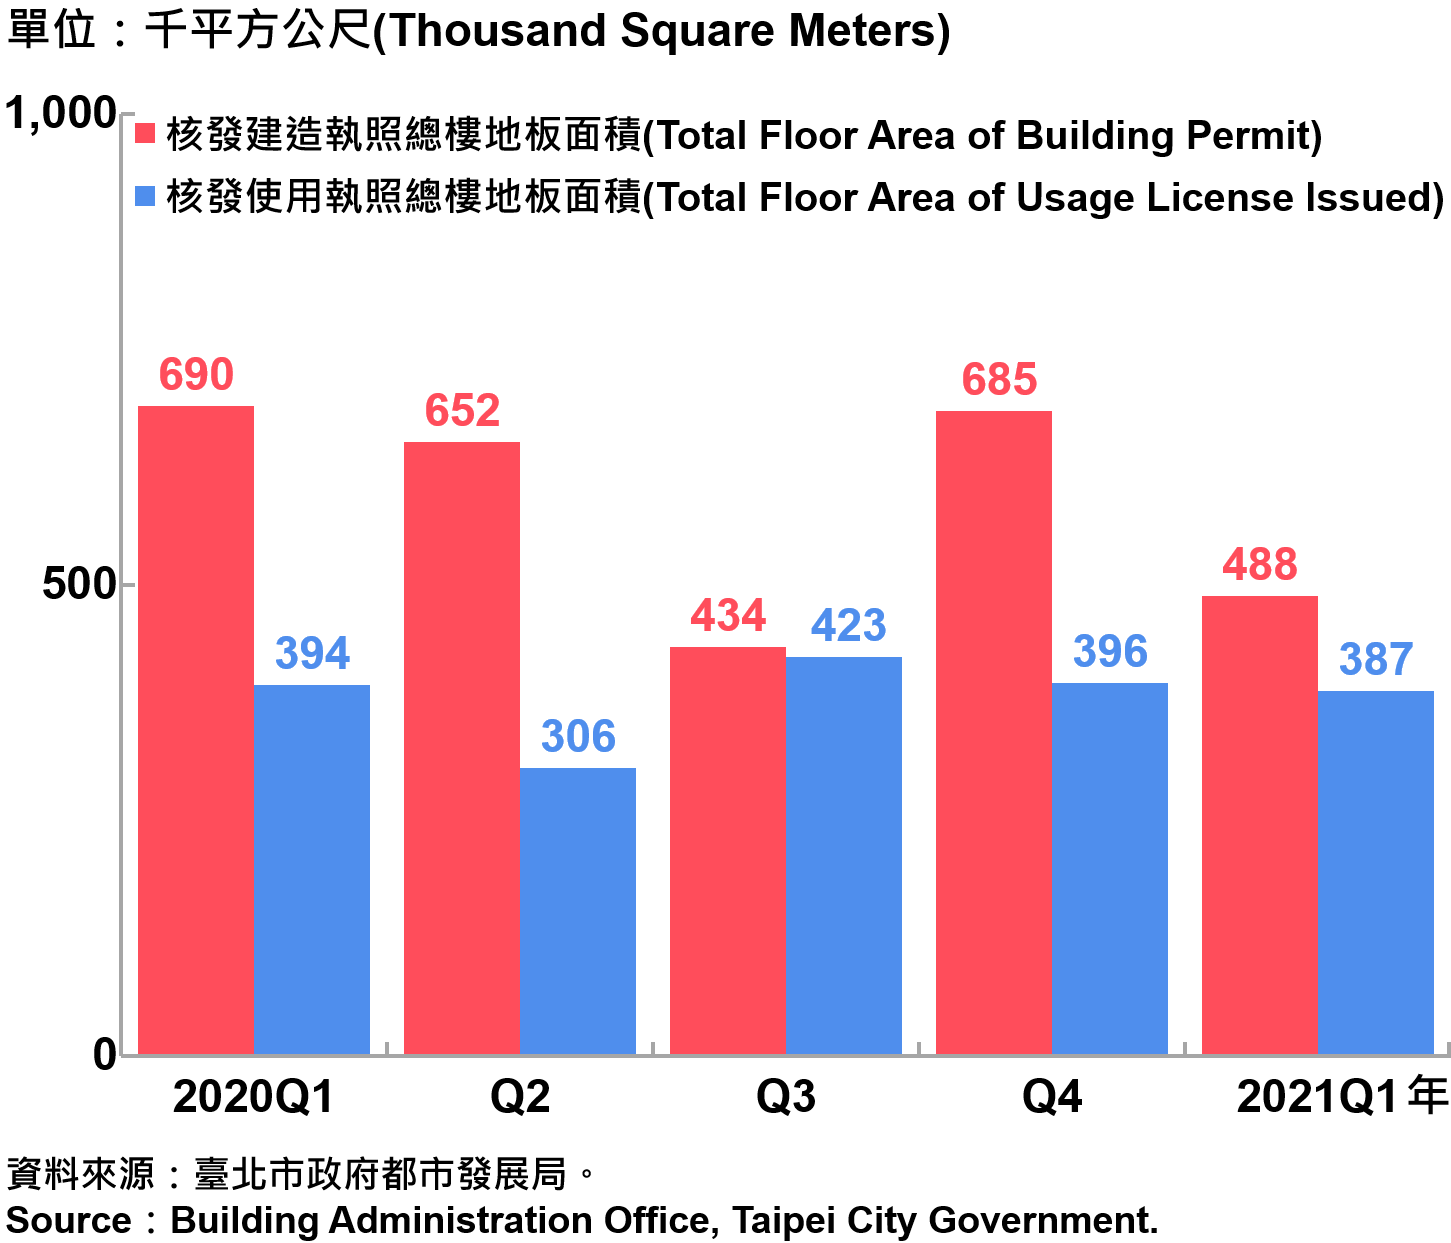 臺北市核發建築物執照與使用執照總樓地板面積—2021Q1 Building with Newly Construction and Using Construction Permits Issued in Taipei City—2021Q1